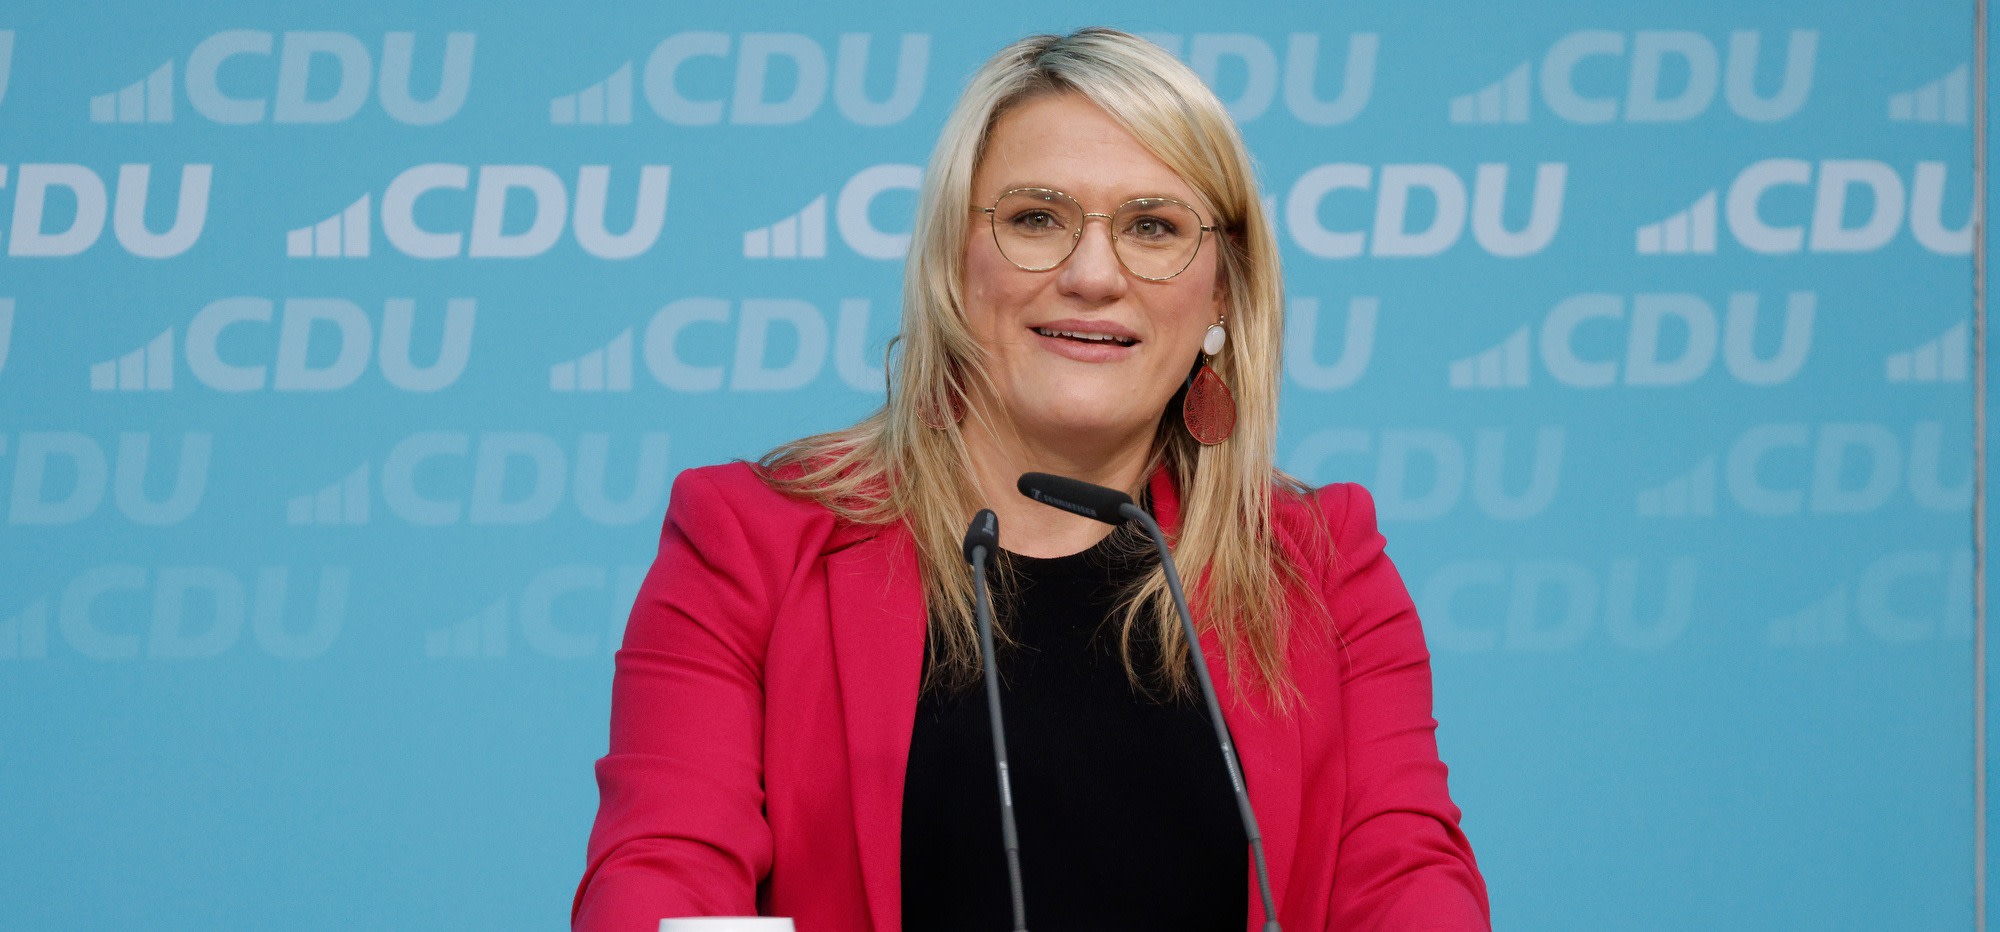 Foto: CDU Deutschlands/ Tobias Koch